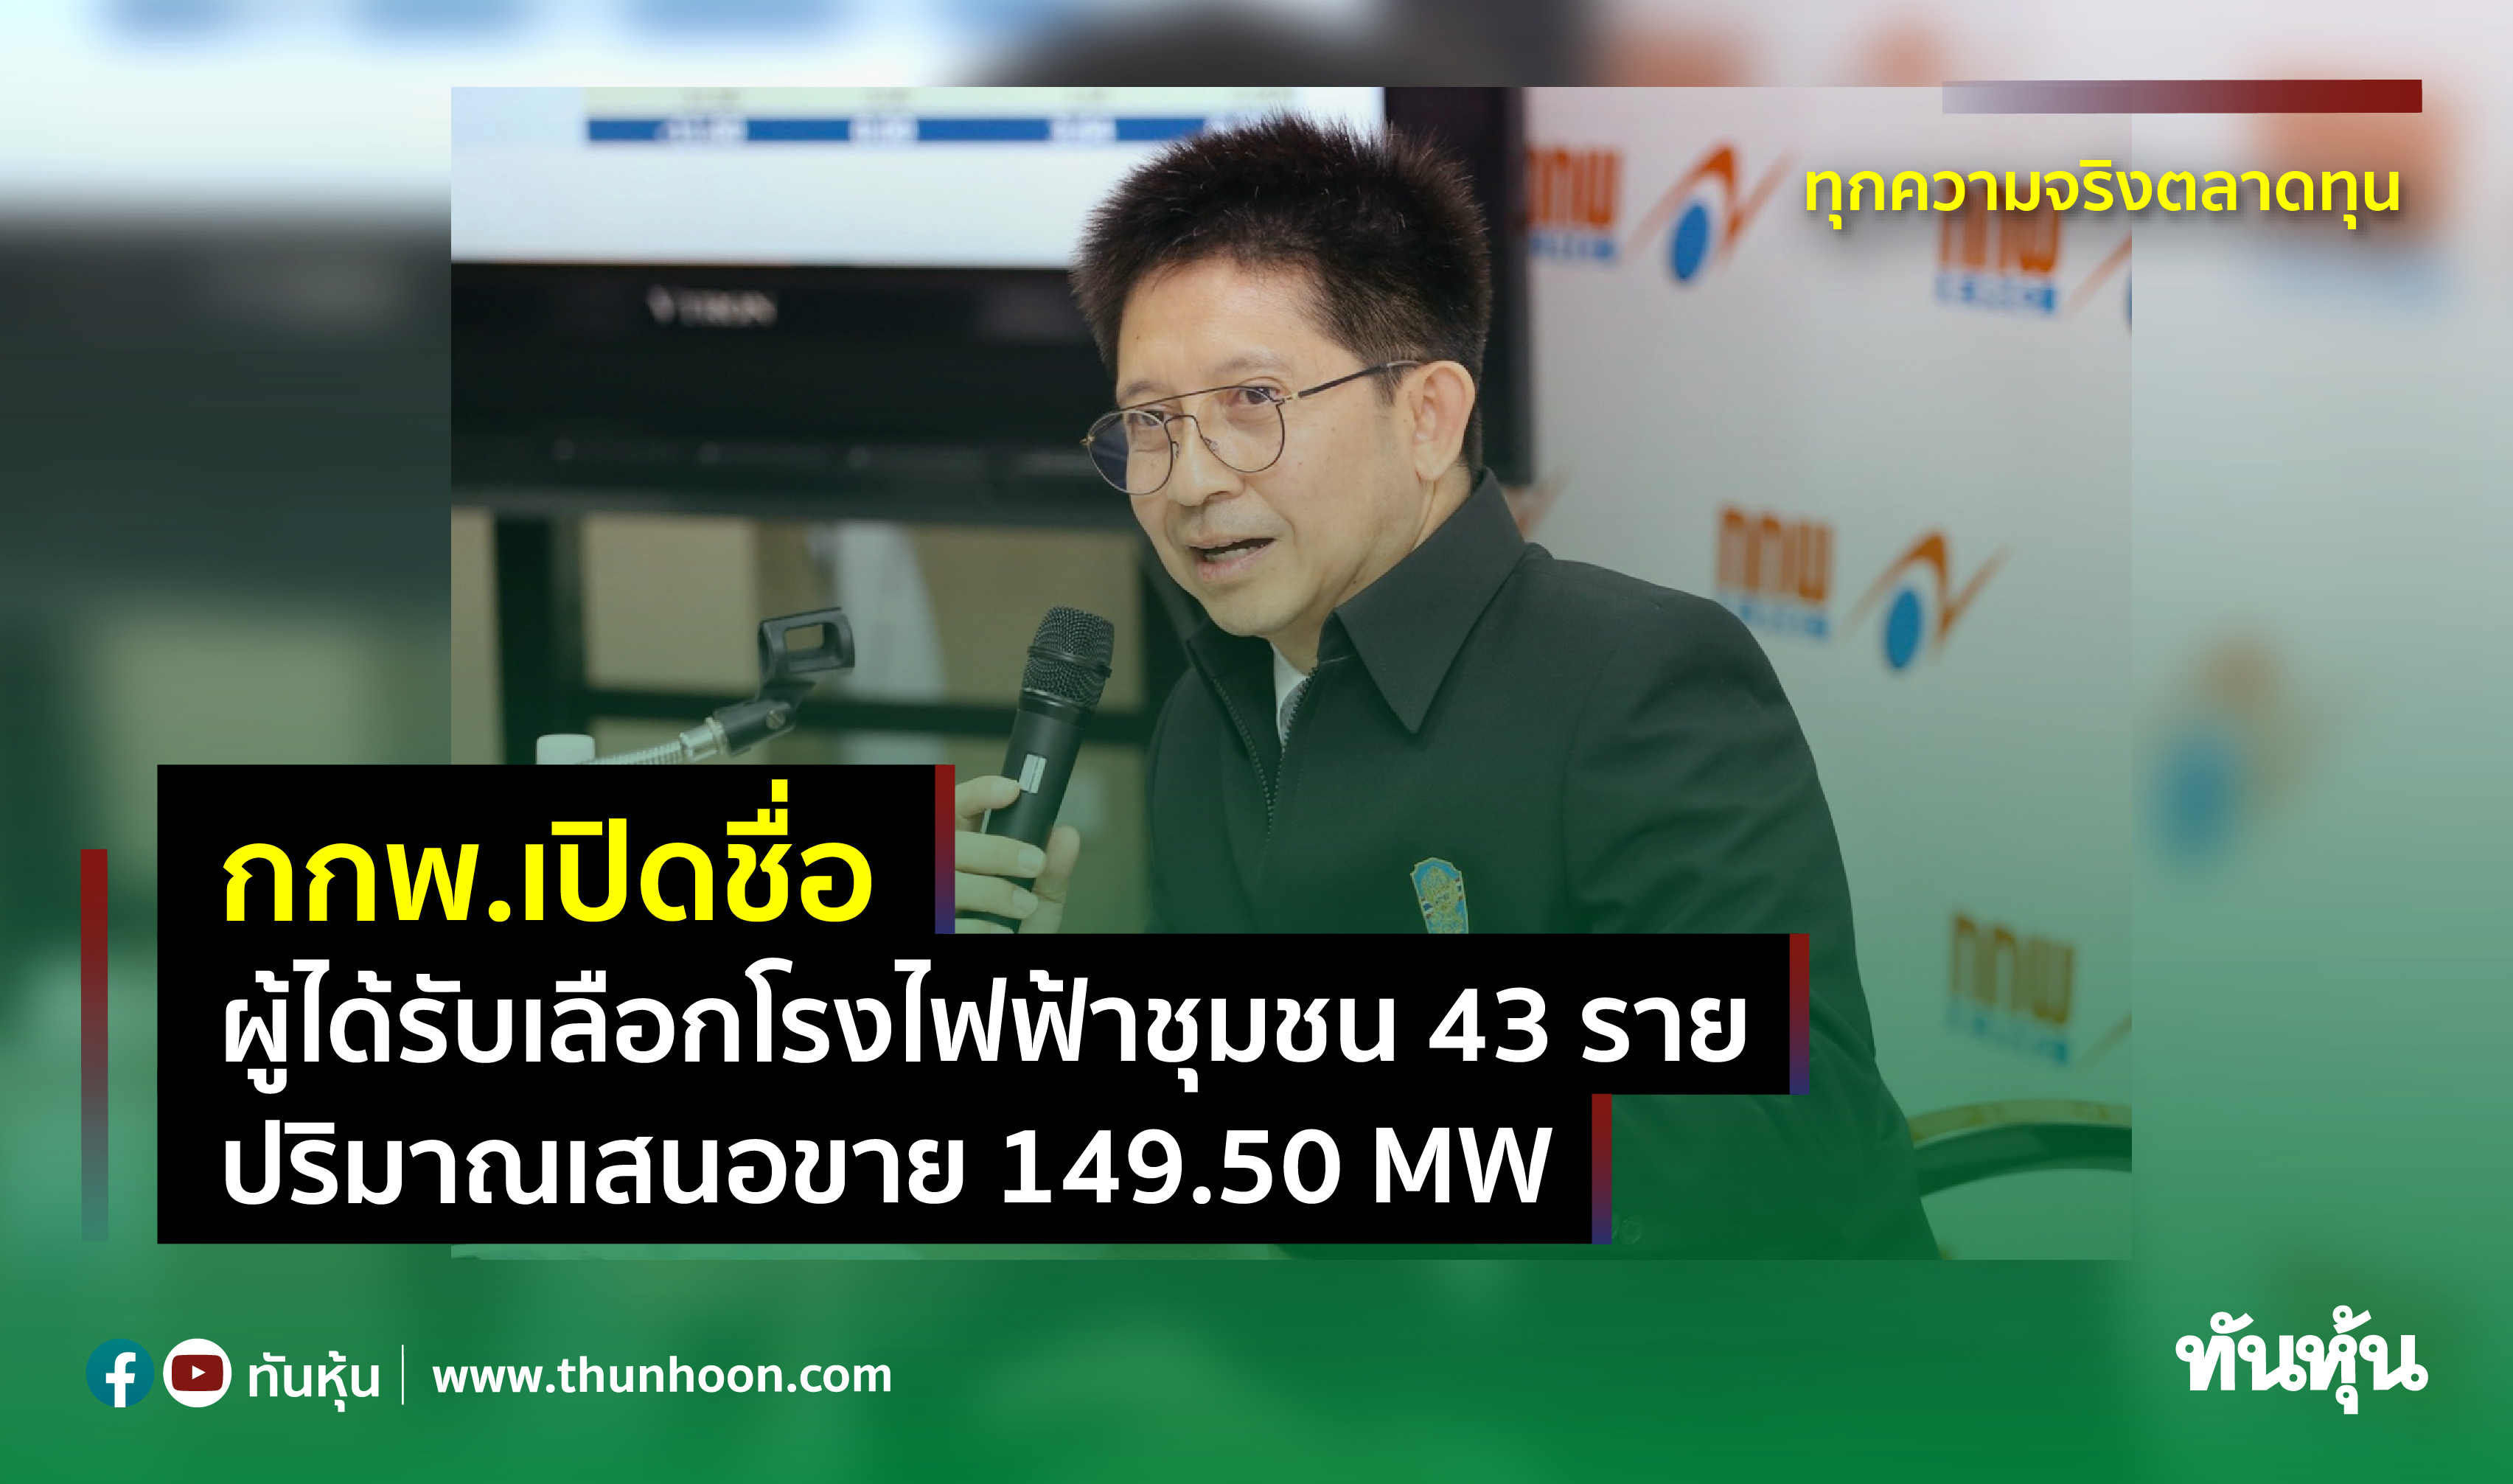 กกพ.เปิดชื่อผู้ได้รับเลือกโรงไฟฟ้าชุมชน 43 ราย ปริมาณเสนอขาย 149.50 MW